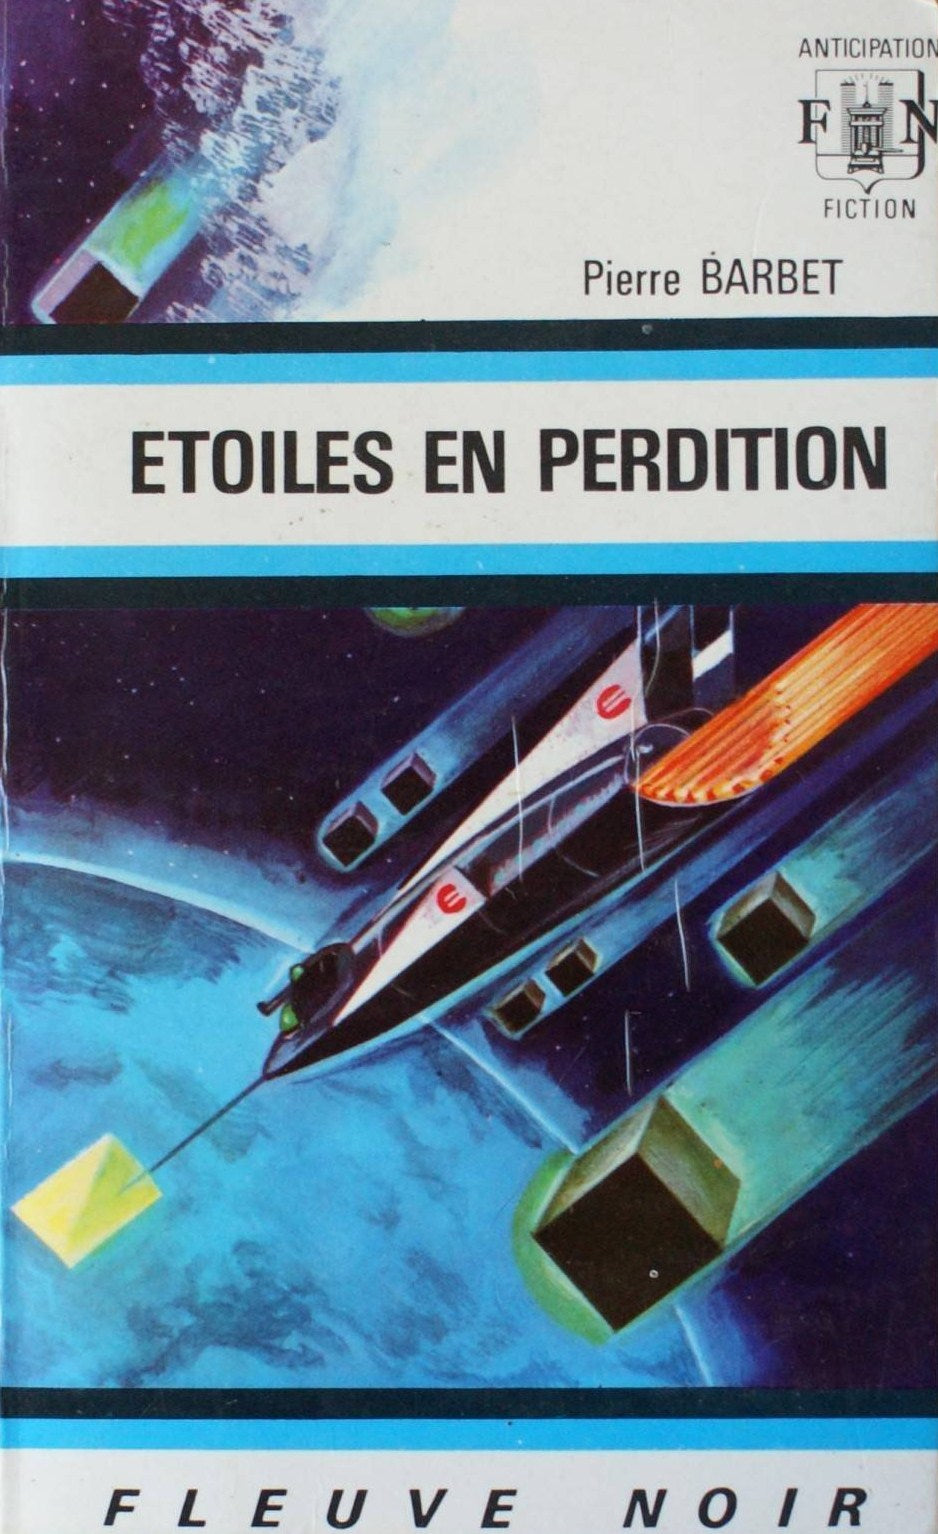 Livre ISBN  Anticipation : Étoiles en perdition (Pierre Barbet)